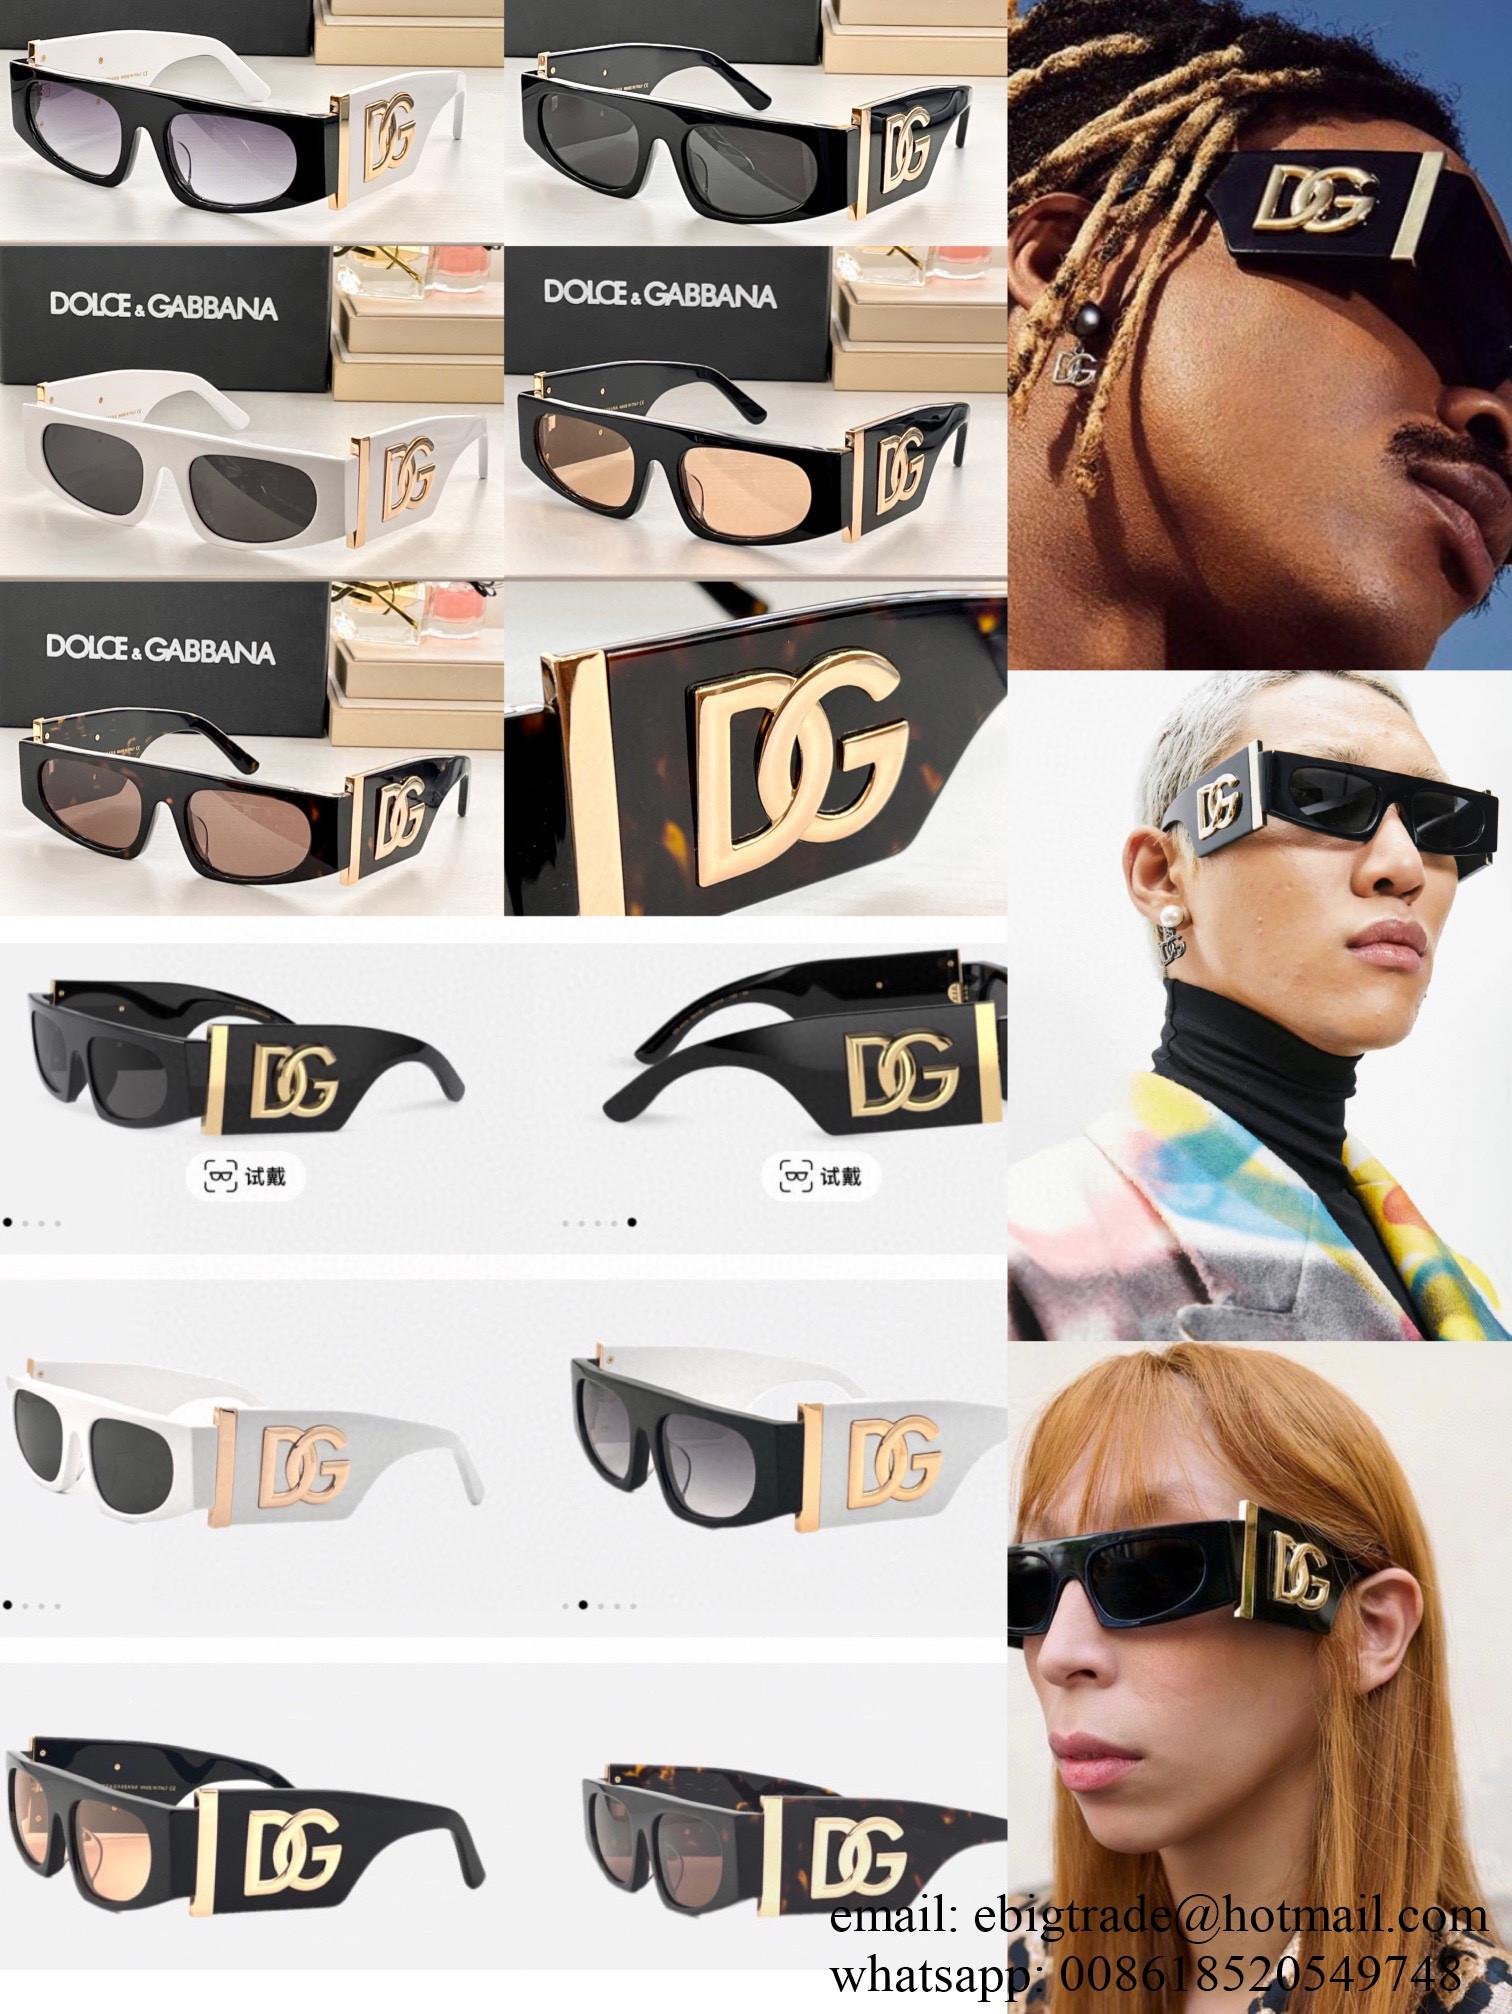 Cheap Dolce Gabbana Sunglasses